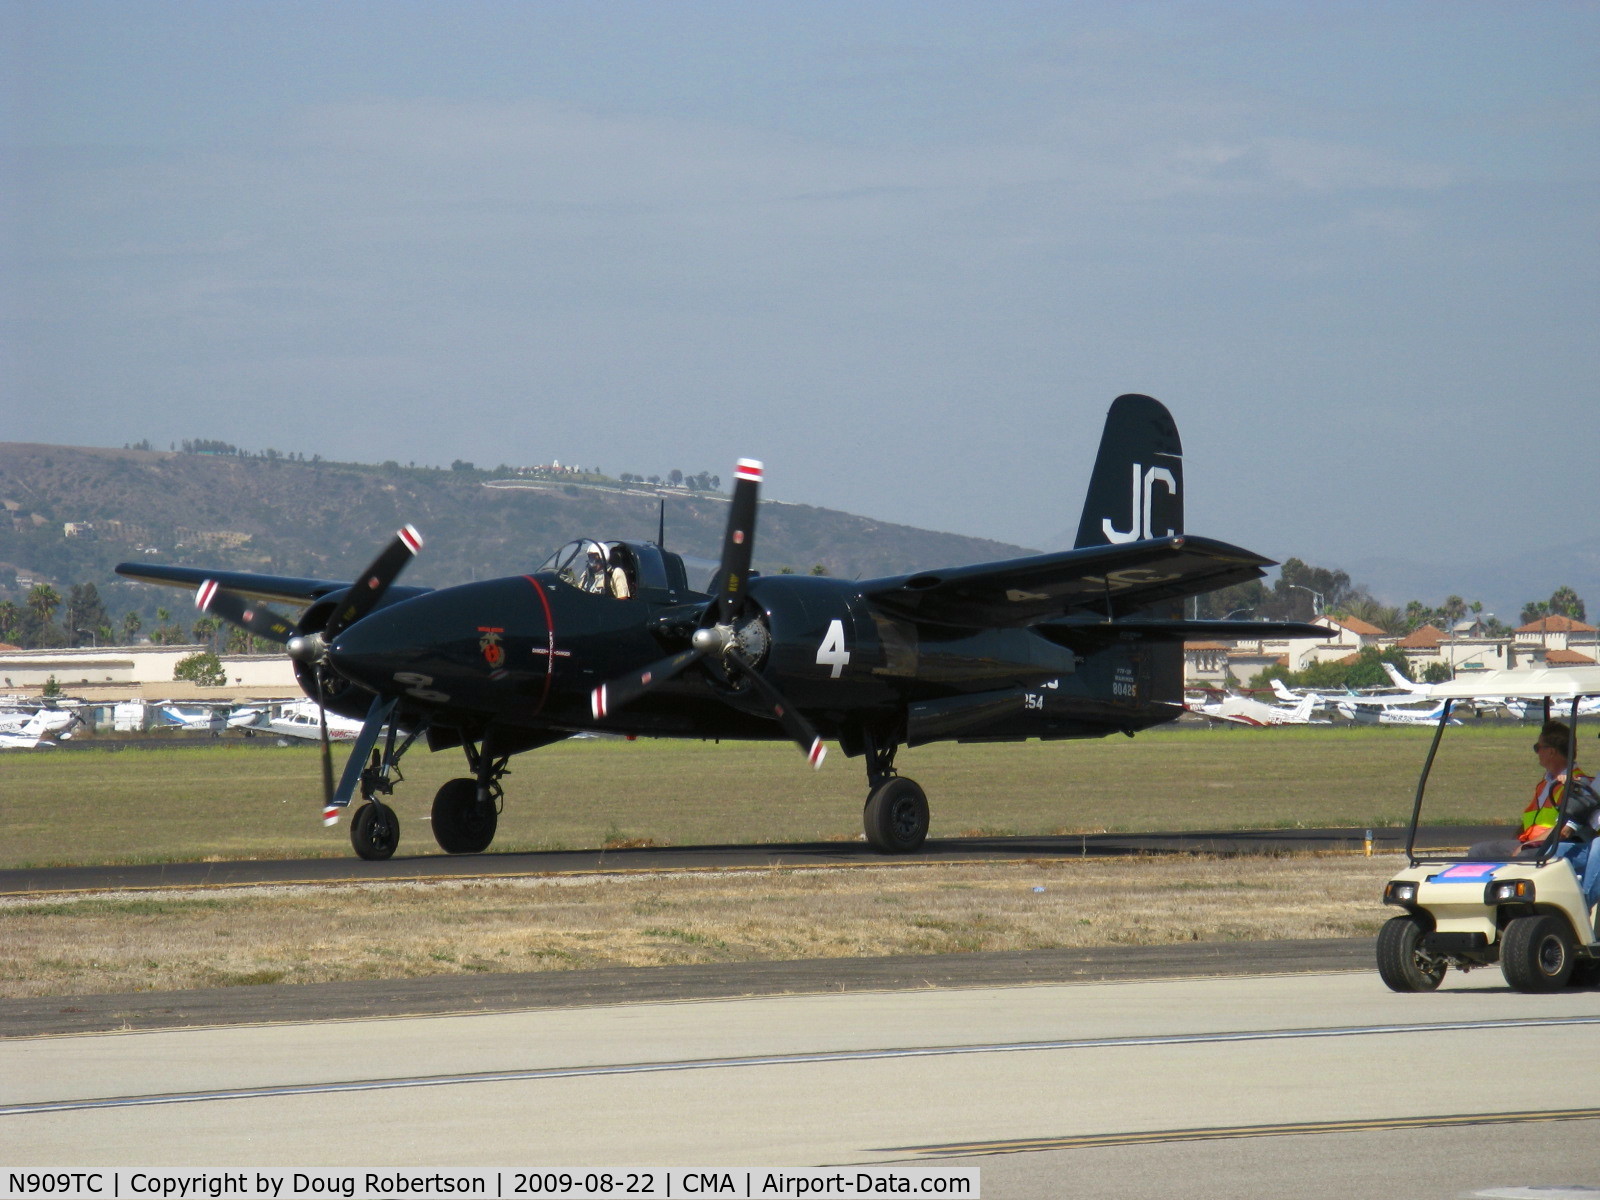 N909TC, 1945 Grumman F7F-3P Tigercat C/N 80425, 1945 Grumman F7F-3 TIGERCAT, two P&W R2800-34 Double Wasps 2,100 Hp each, taxi